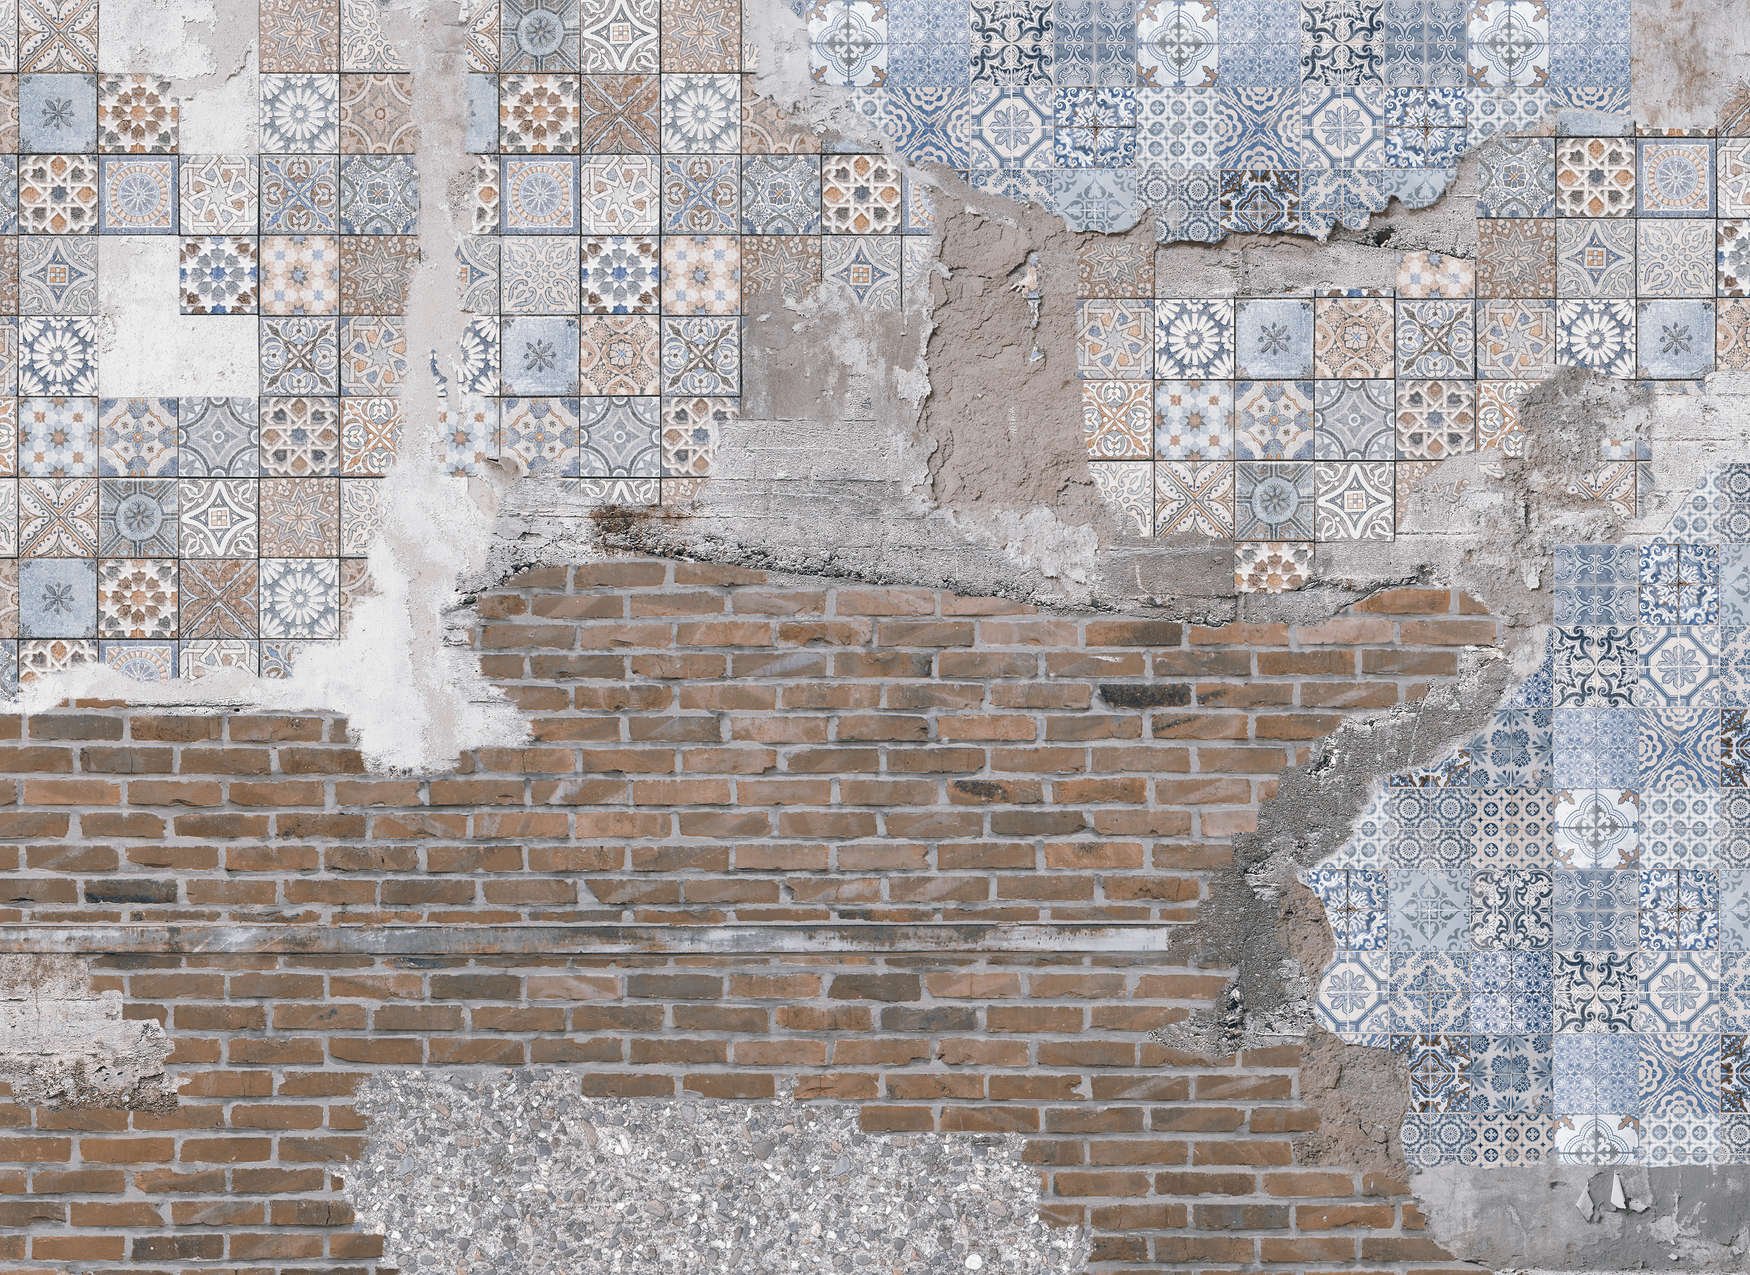             Bakstenen muur met gepleisterde mozaïeksteentjes Onderlaag behang - Bruin, Blauw, Grijs
        